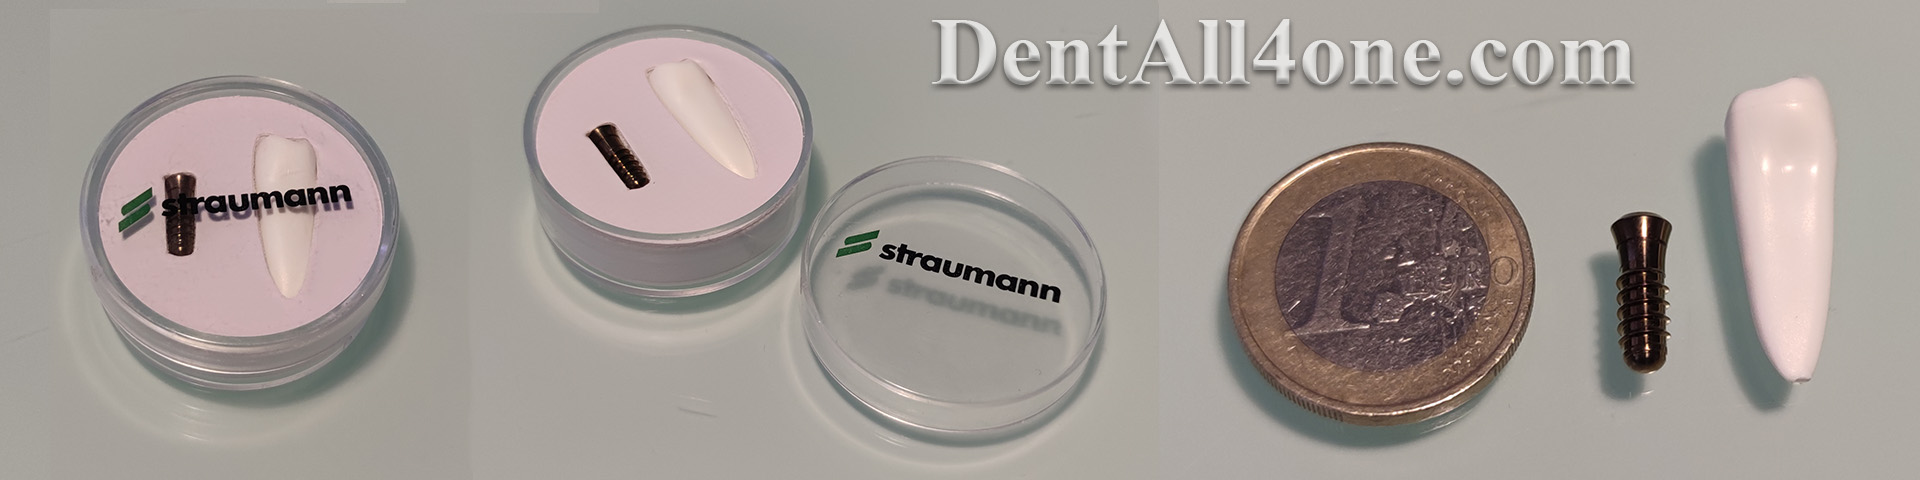 Implantat Straumann - www.dentall4one.com